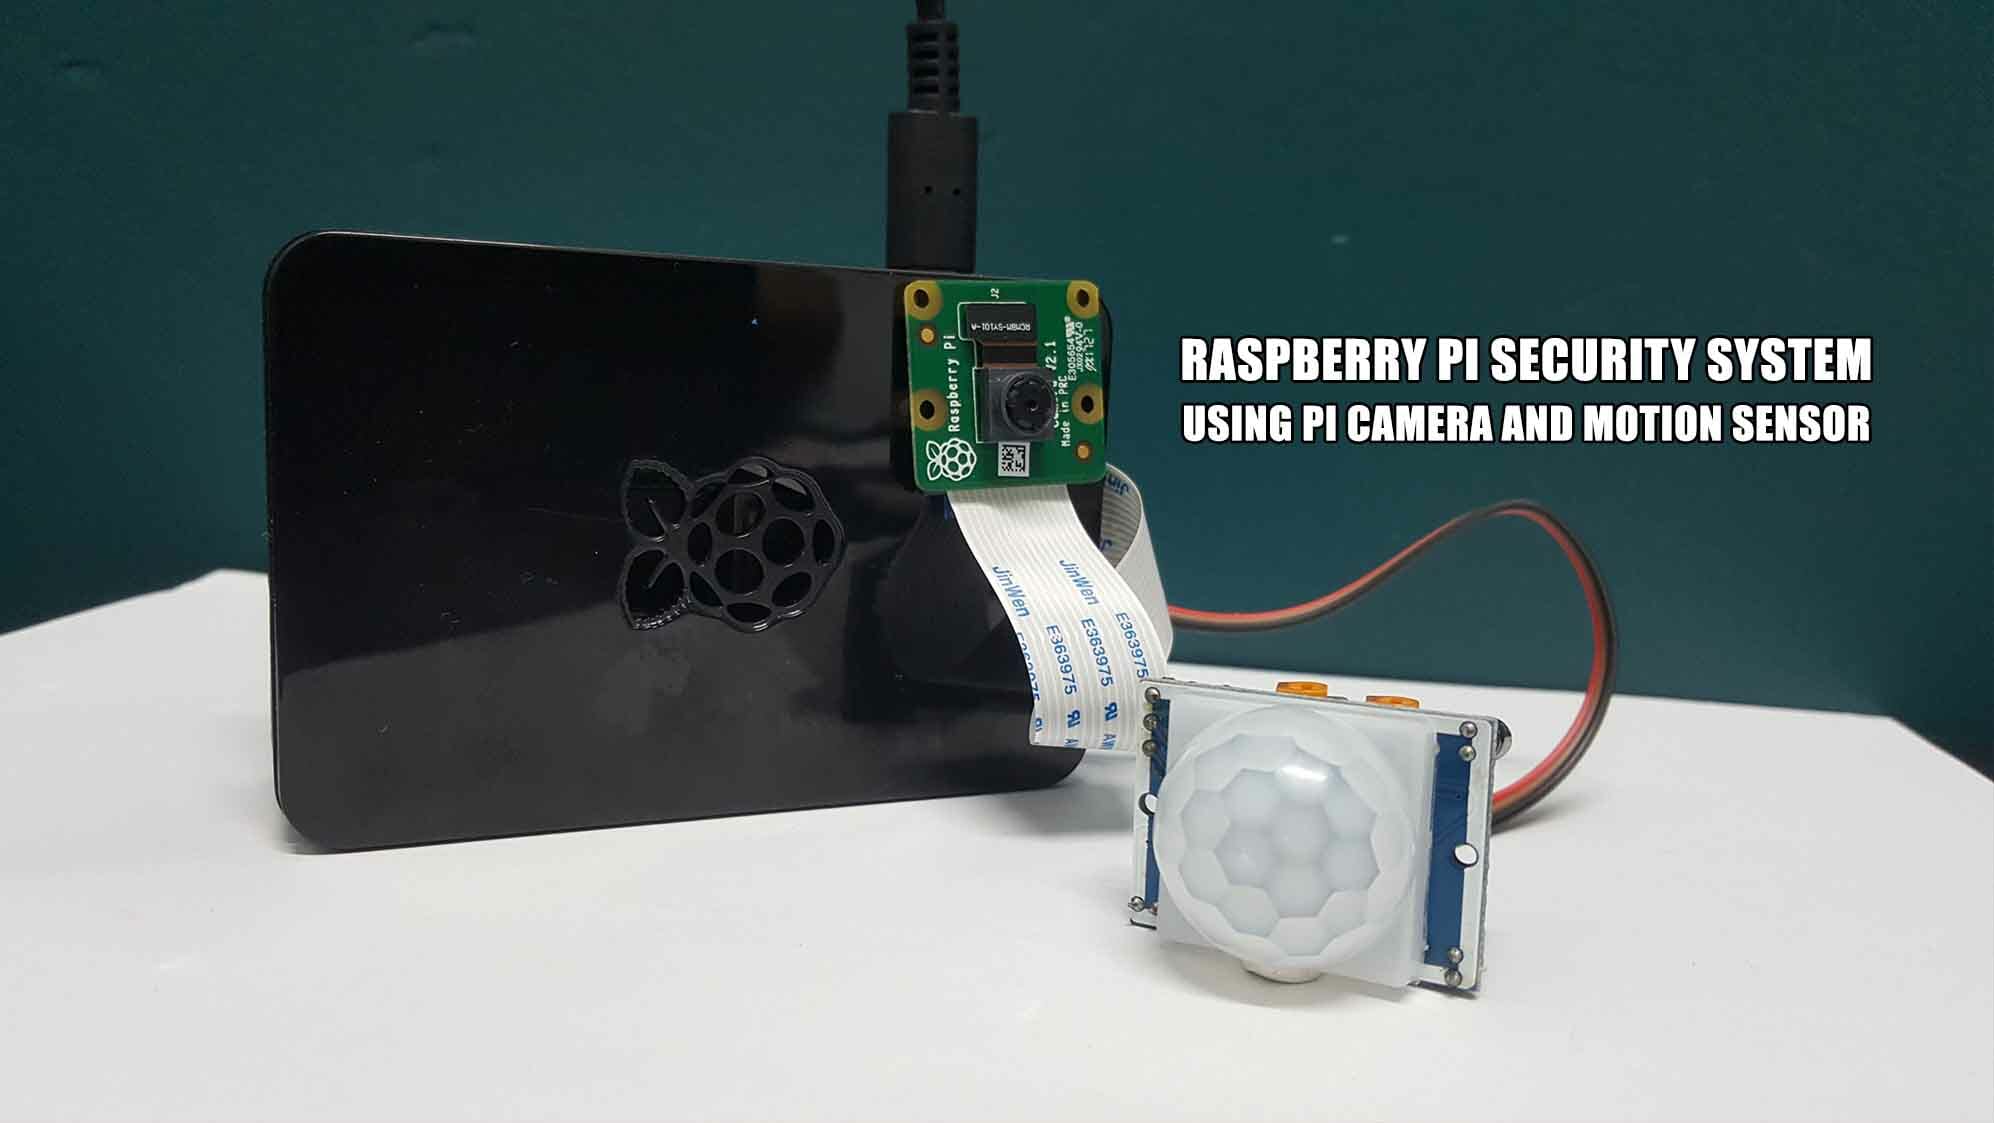 Raspberry Pi Security System with Pi Camera and Motion Sensor